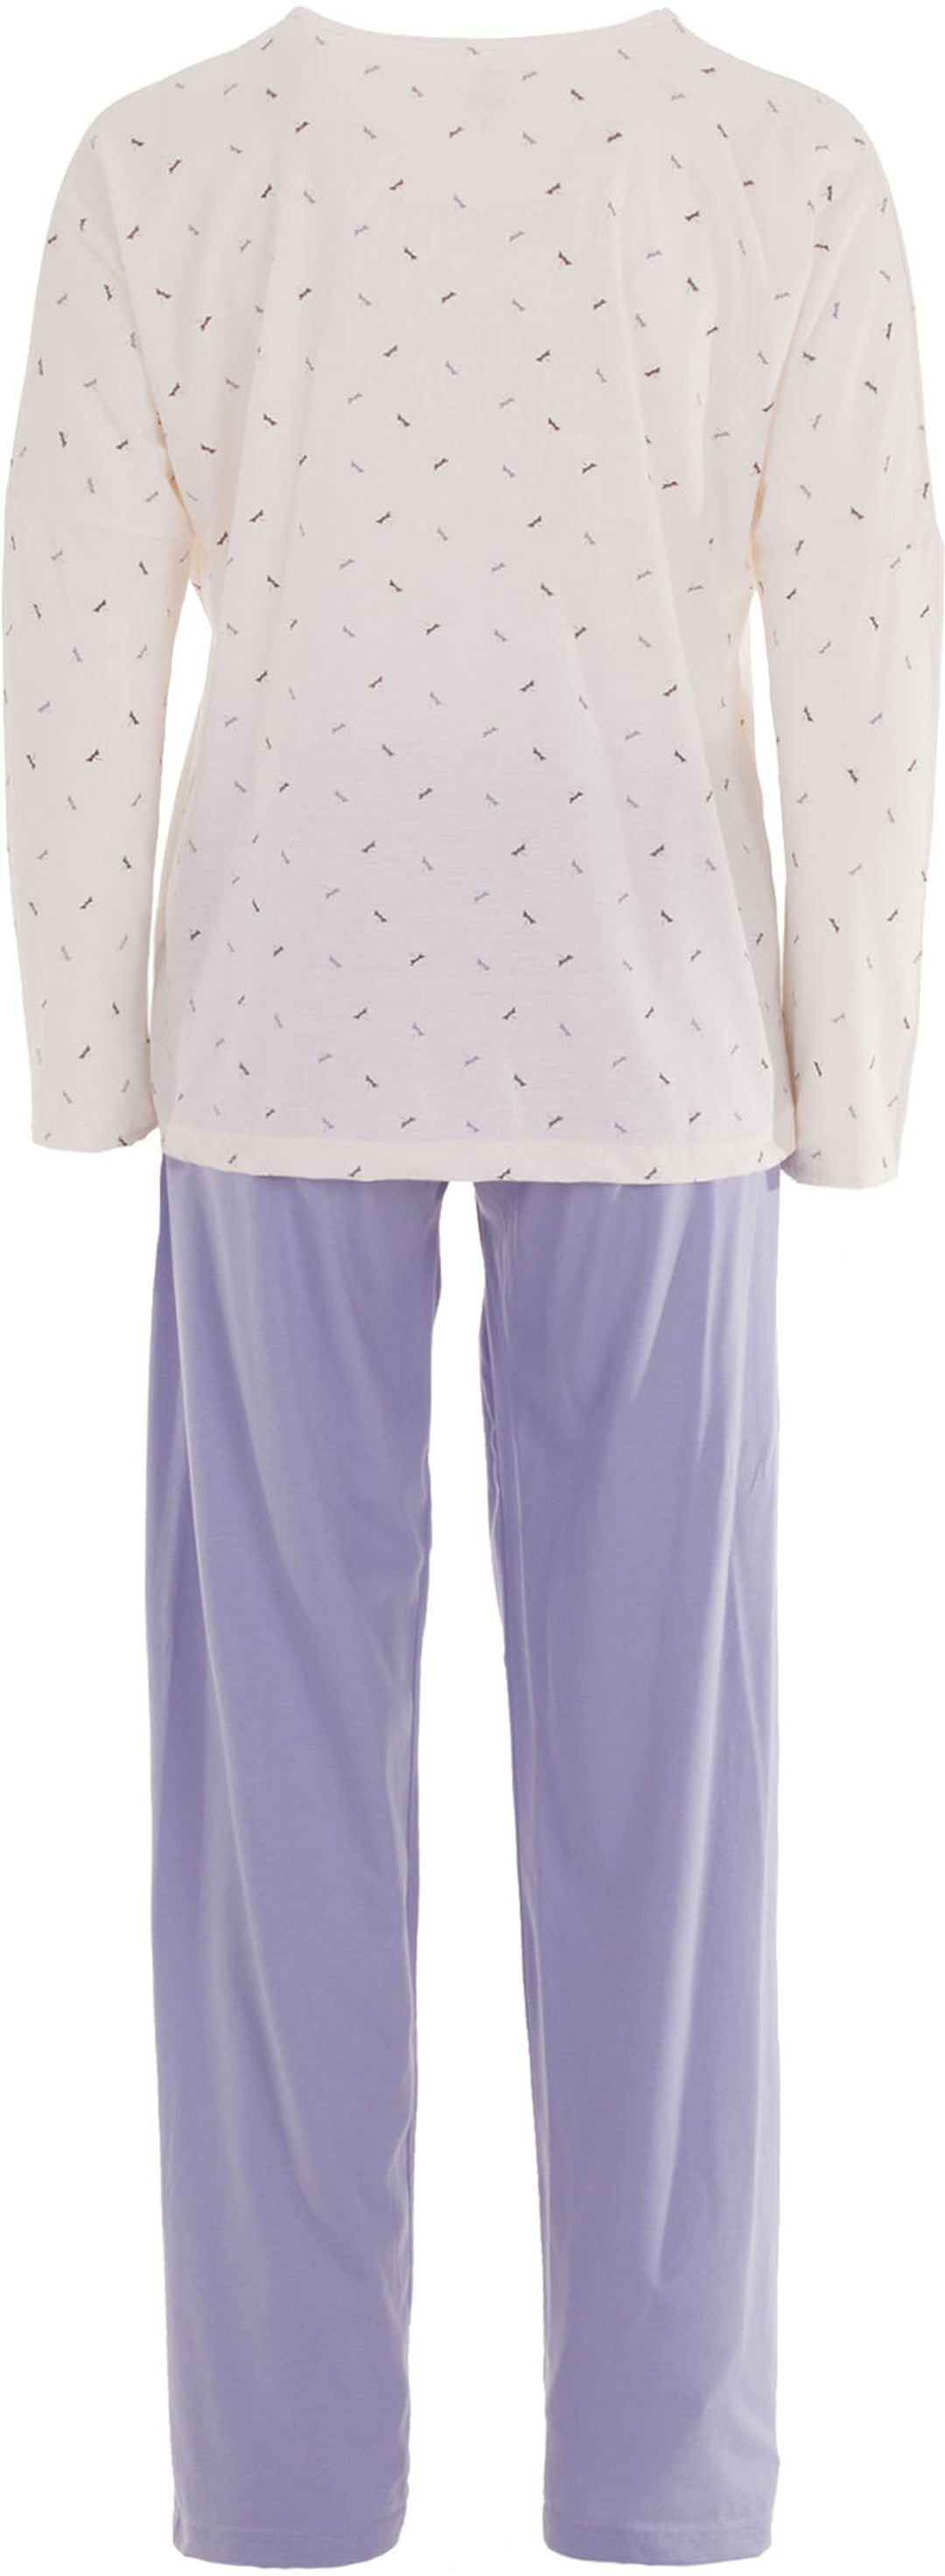 Pyjama Set Langarm - Libelle